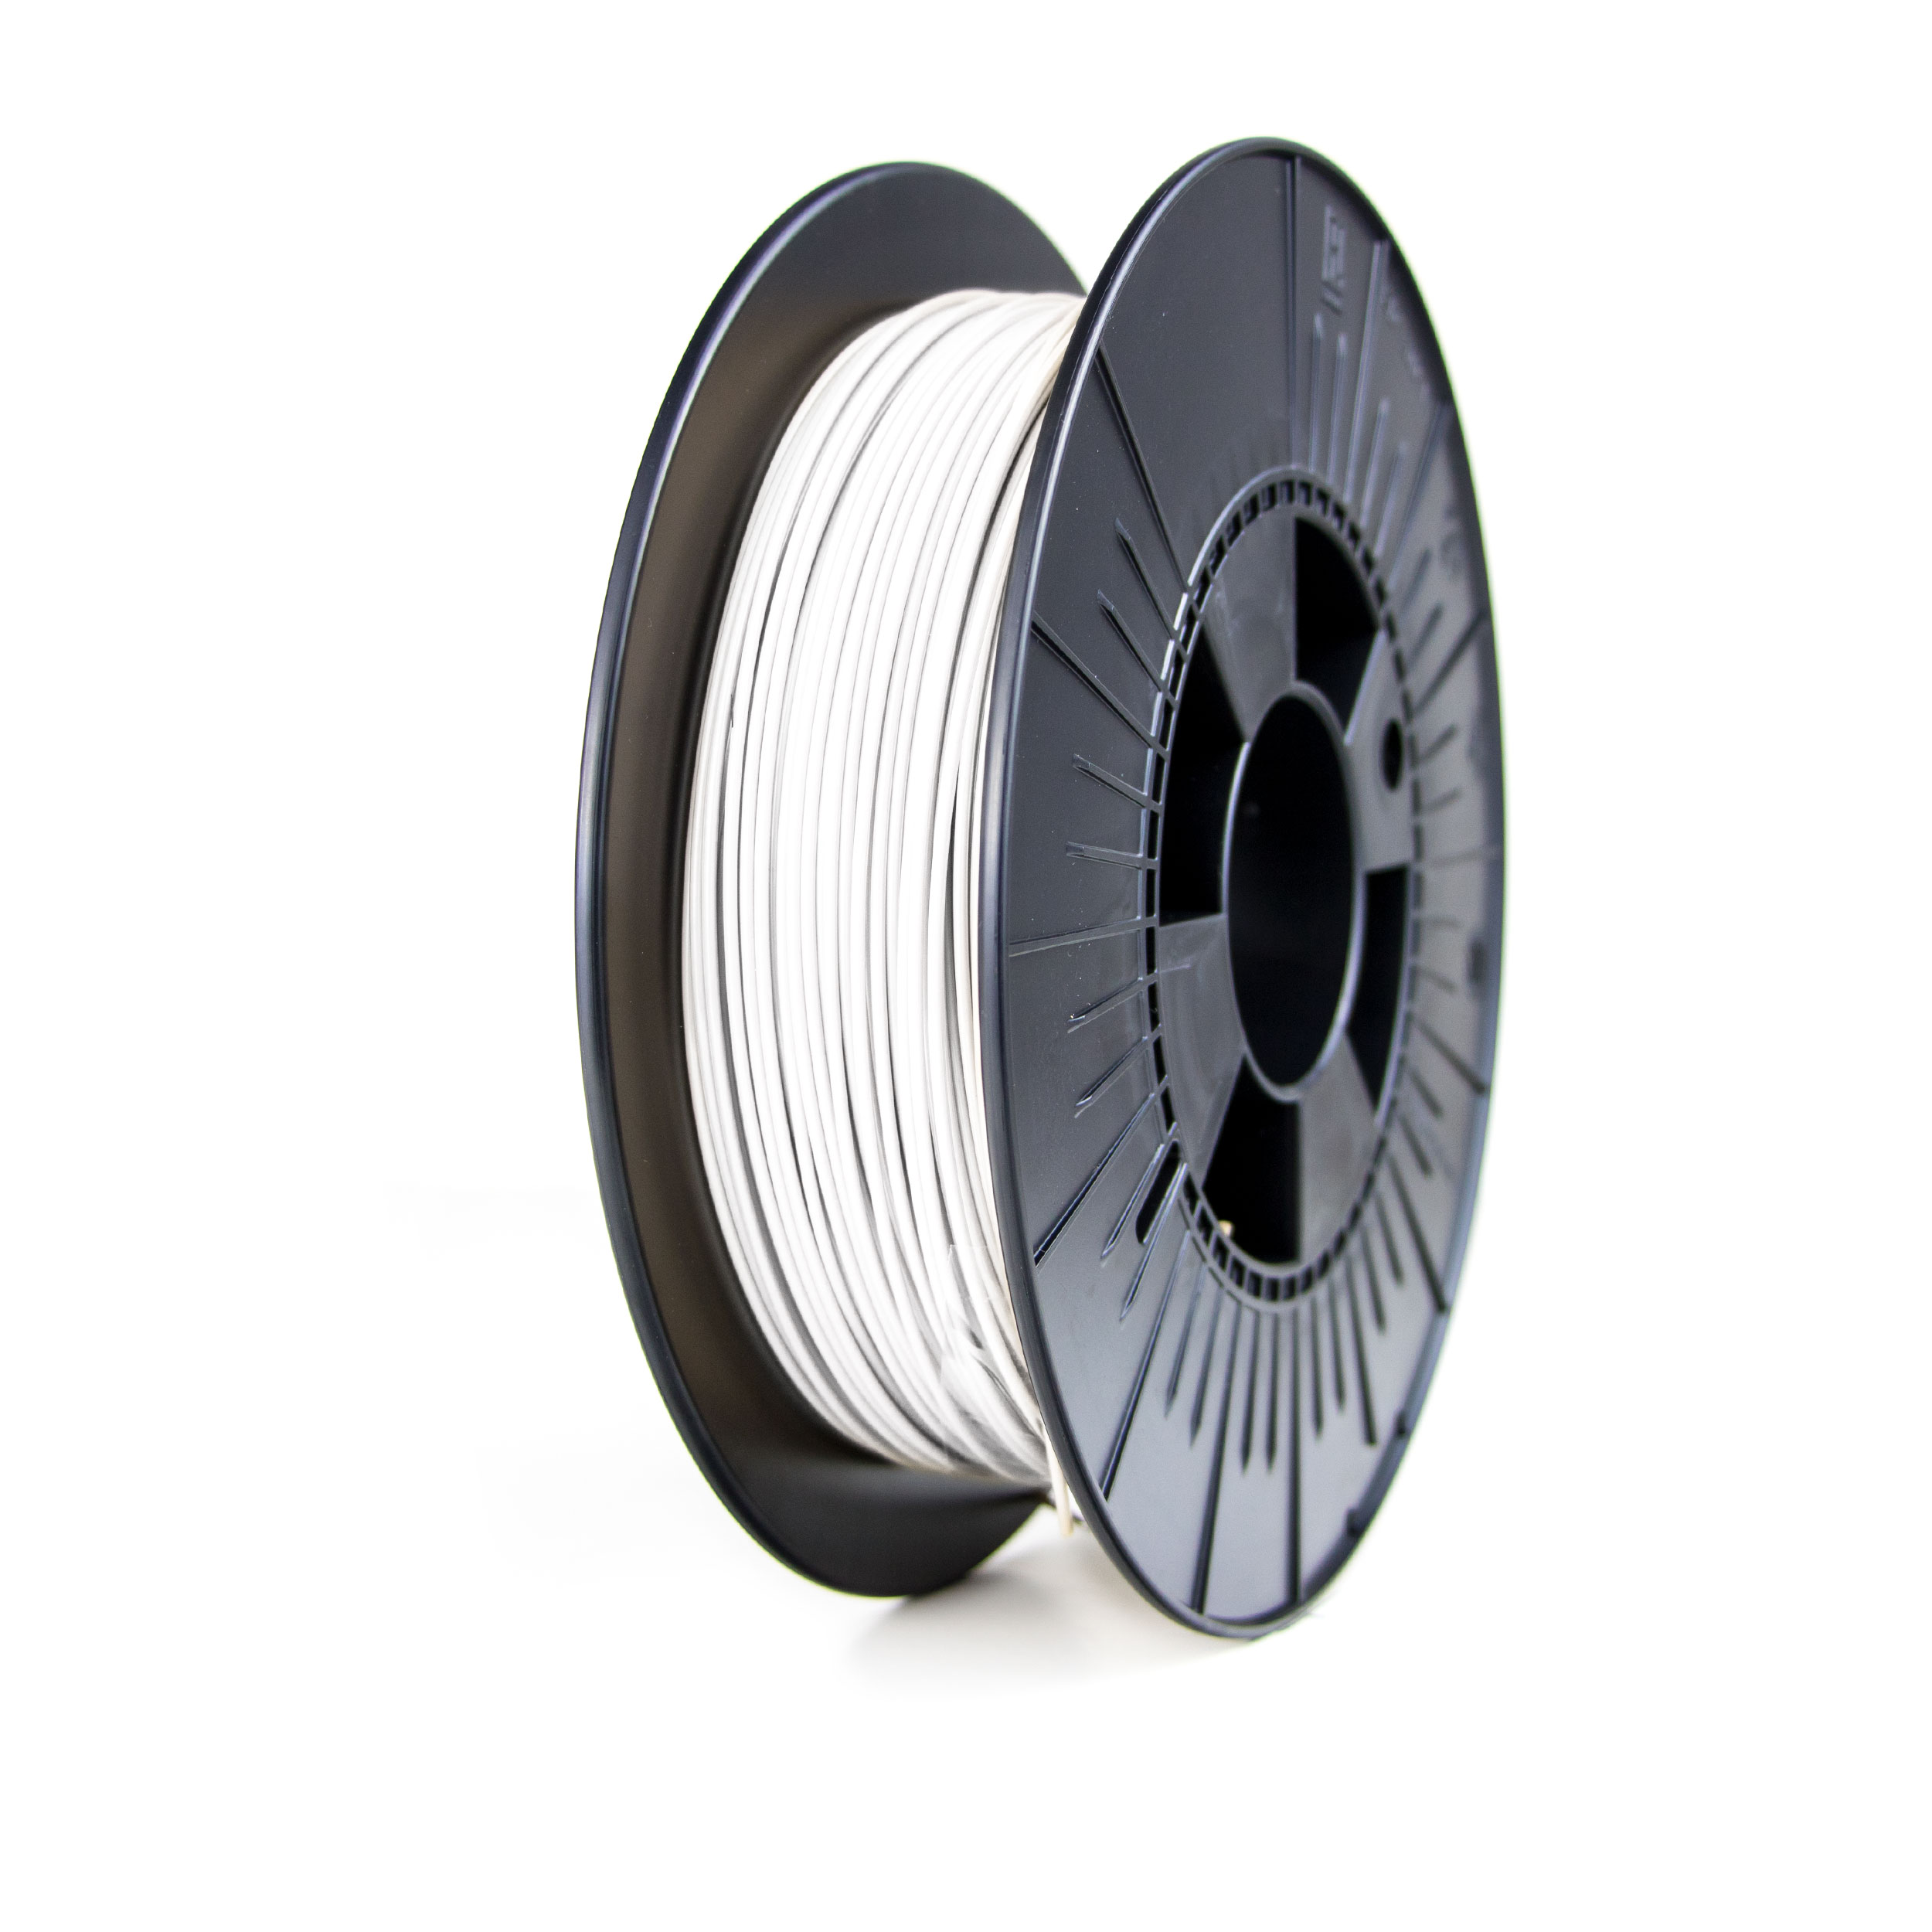 Apium-PVDF-Filament-3D-Printing.jpg